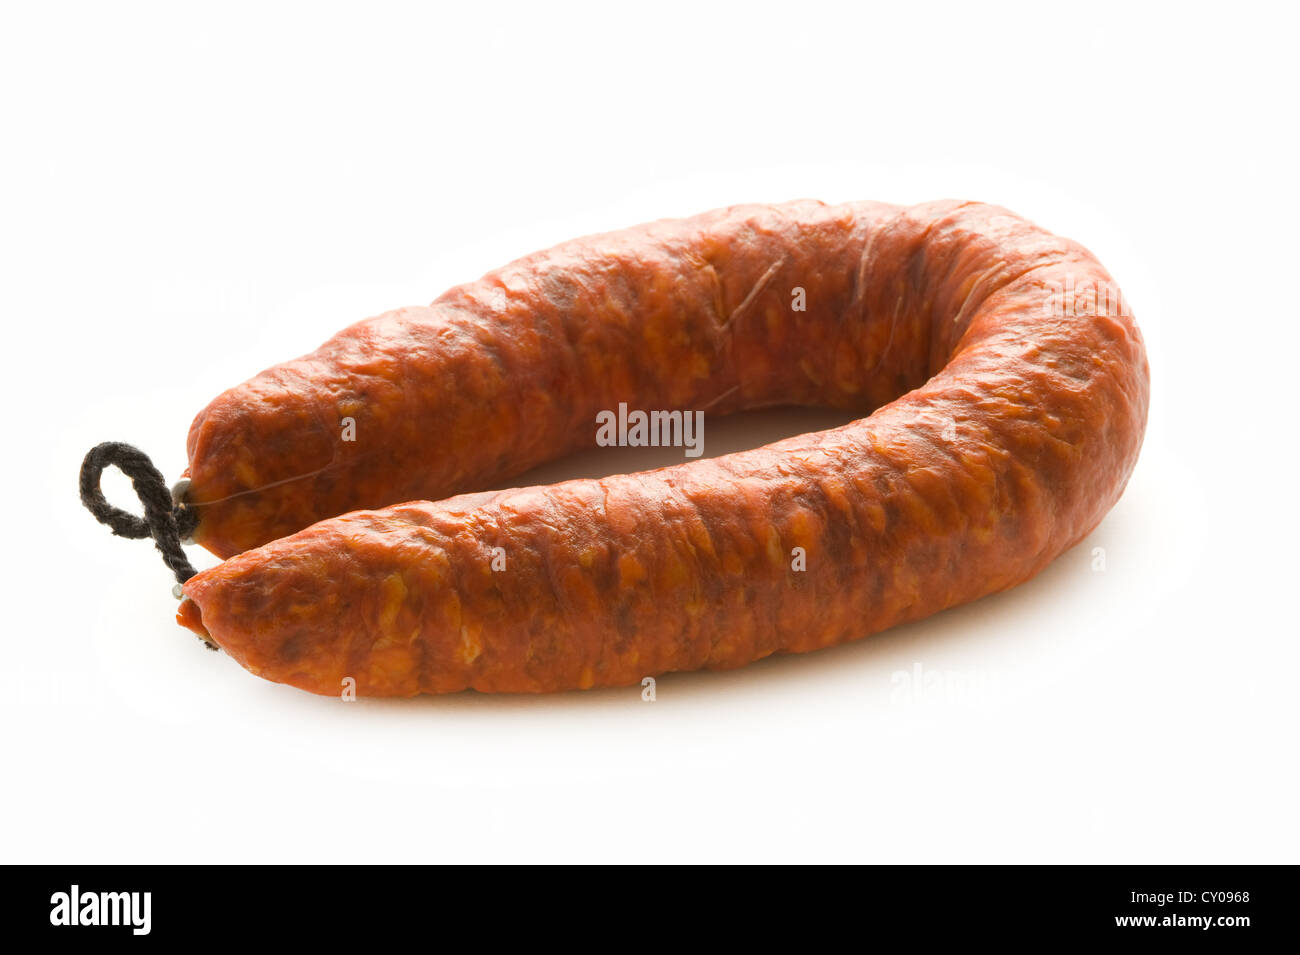 Il chorizo spagnolo conserve di salsicce di maiale isolato su uno sfondo bianco Foto Stock